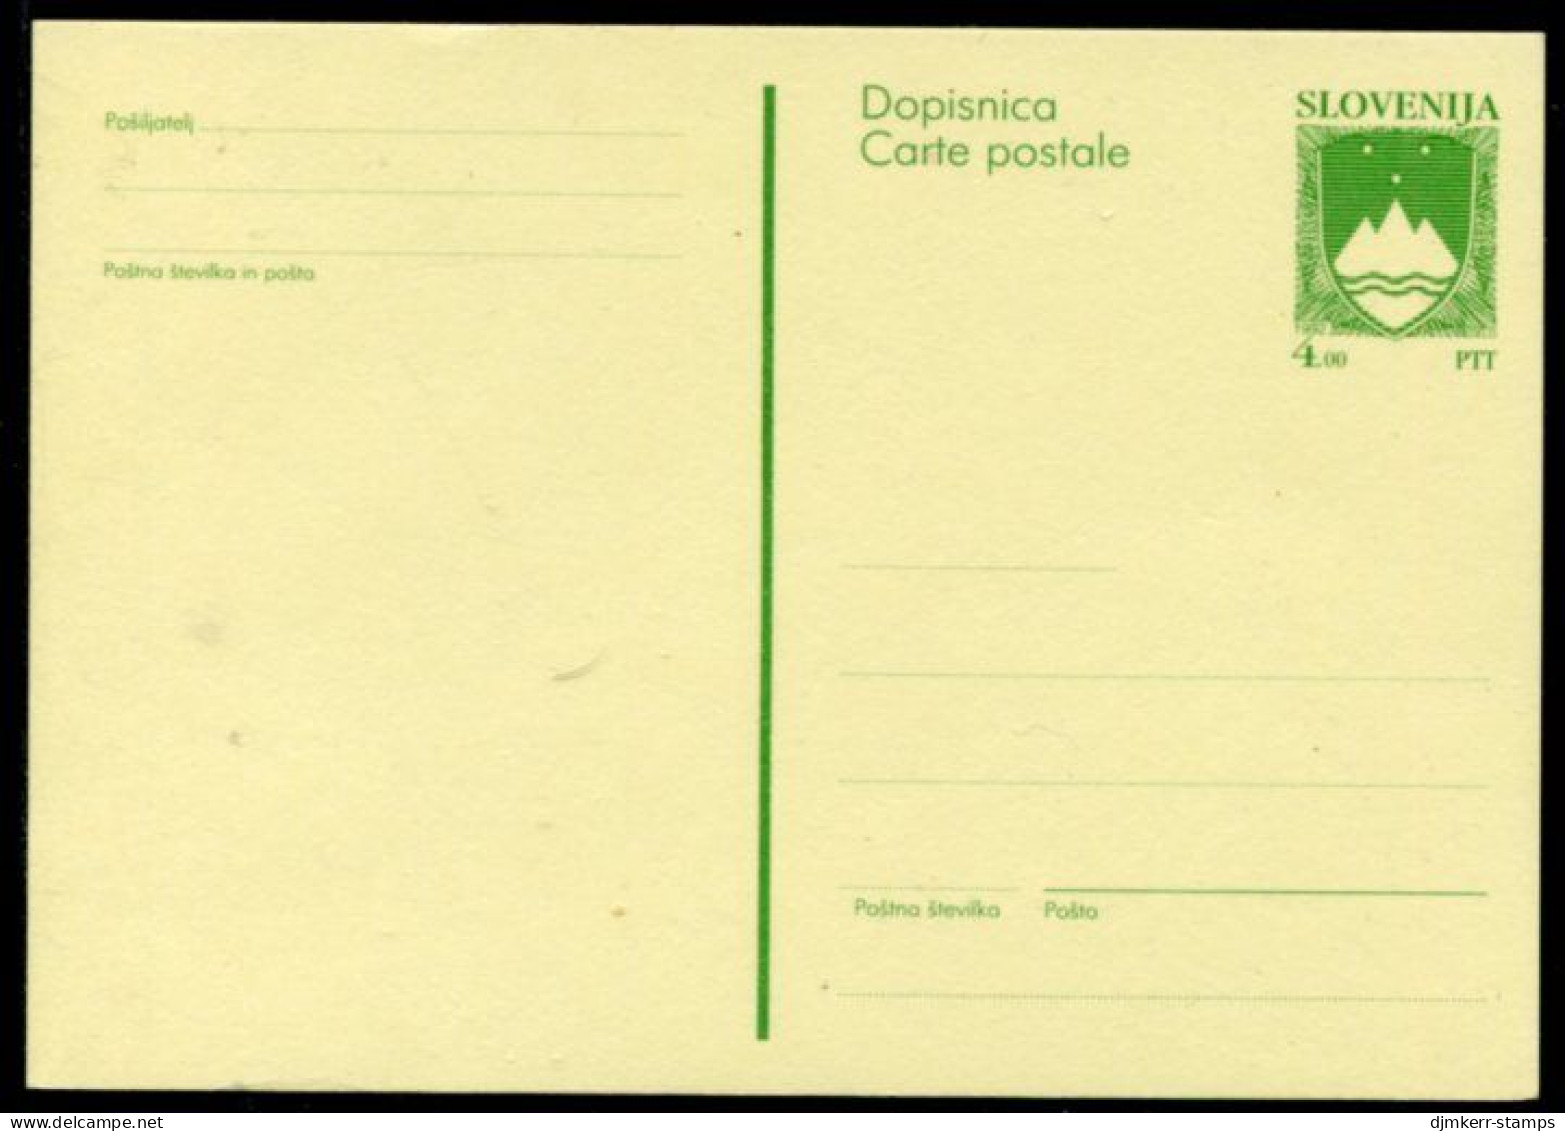 SLOVENIA 1992 4.00 T.  Arms  Stationery Card, Unused.   Michel P1 - Slovénie